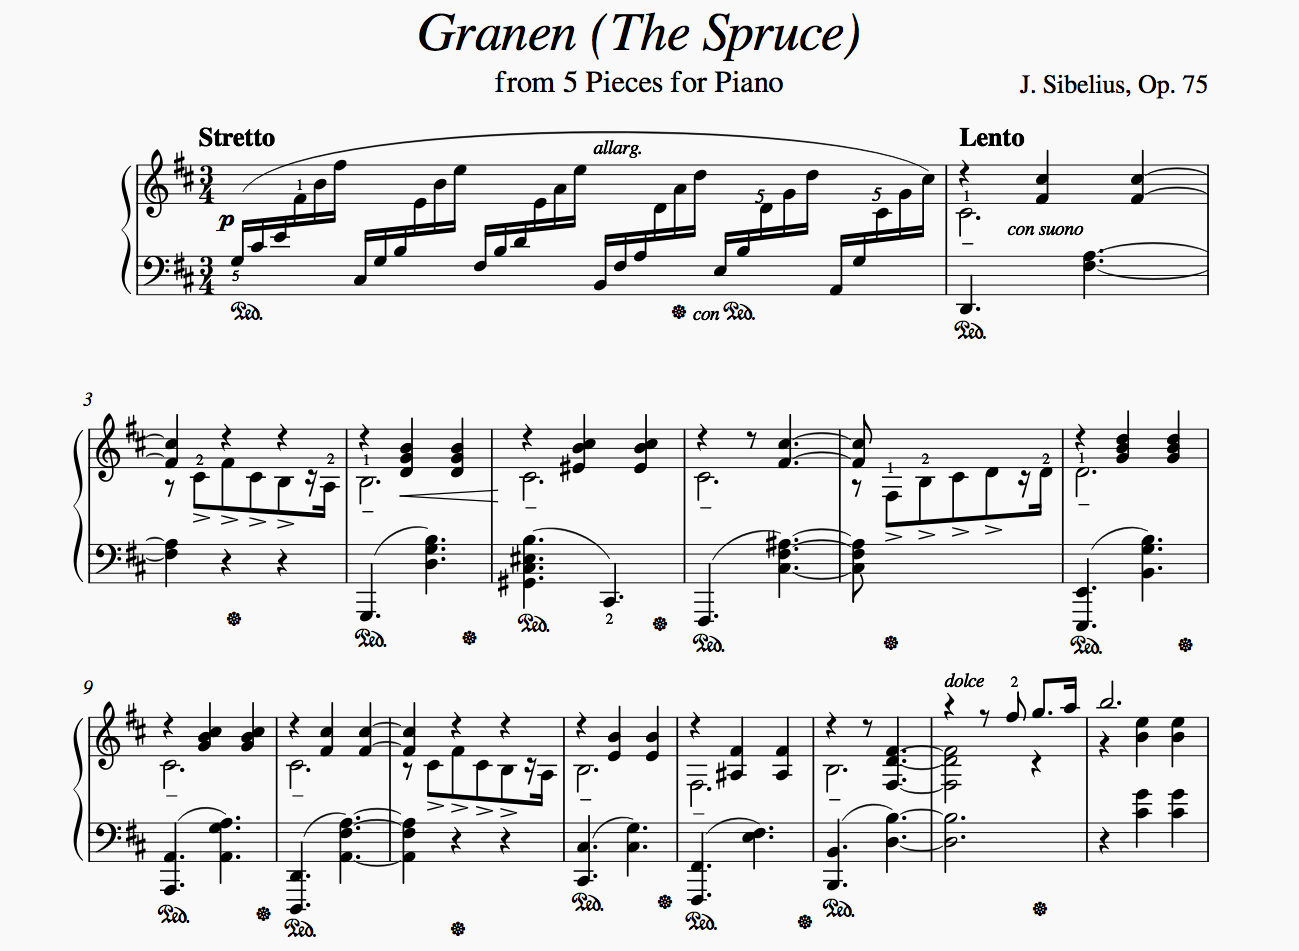 Partition de piano complexe dans MuseScore